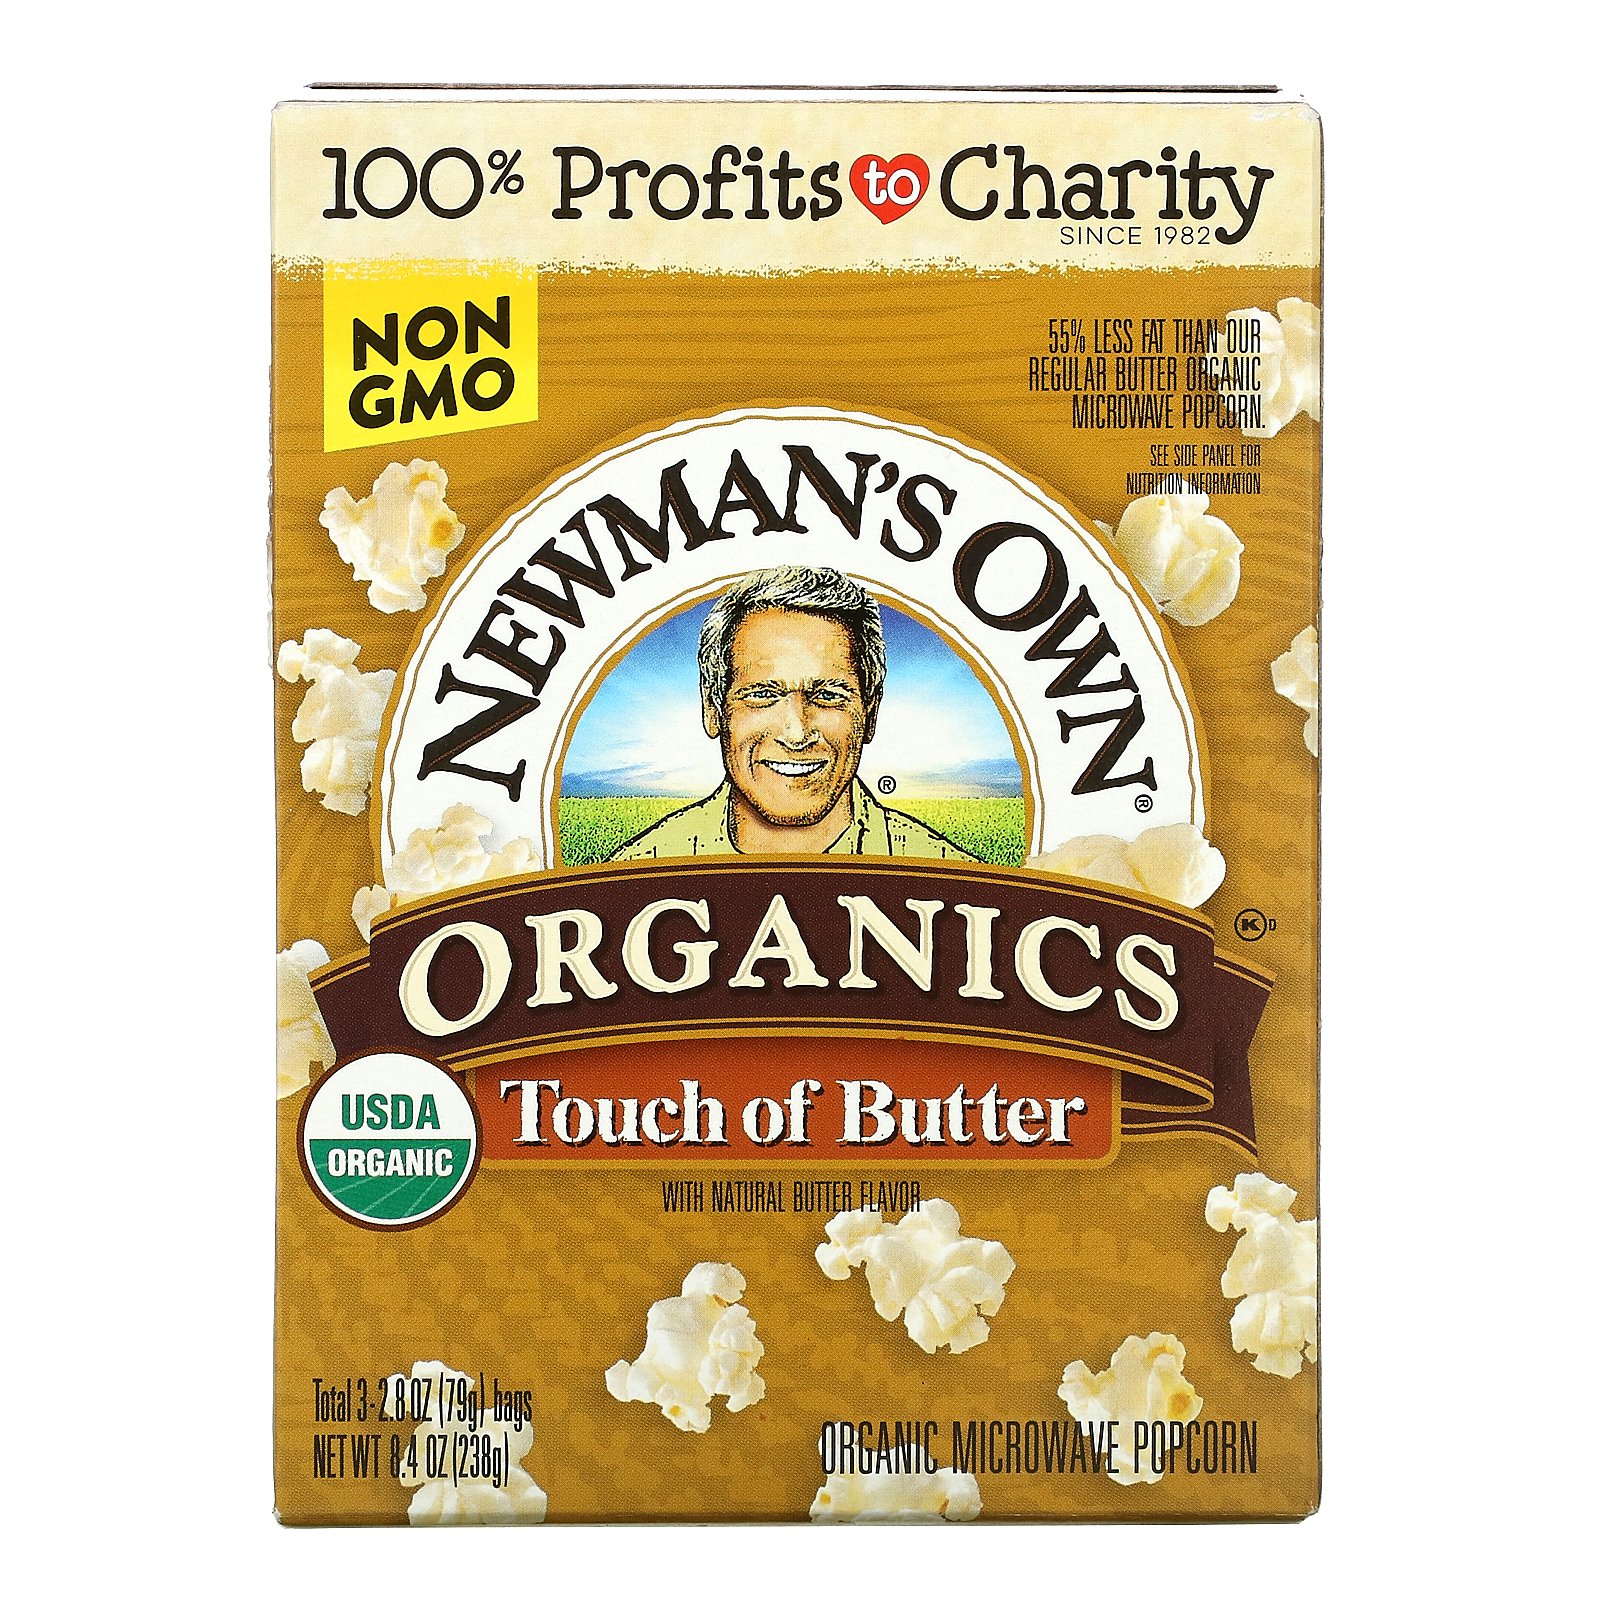 Newman's Own Organics オーガニック ポップコーン 【 iHerb アイハーブ 公式 】 ニューマンズオウンオーガニクス 電子レンジ バター風味 3袋